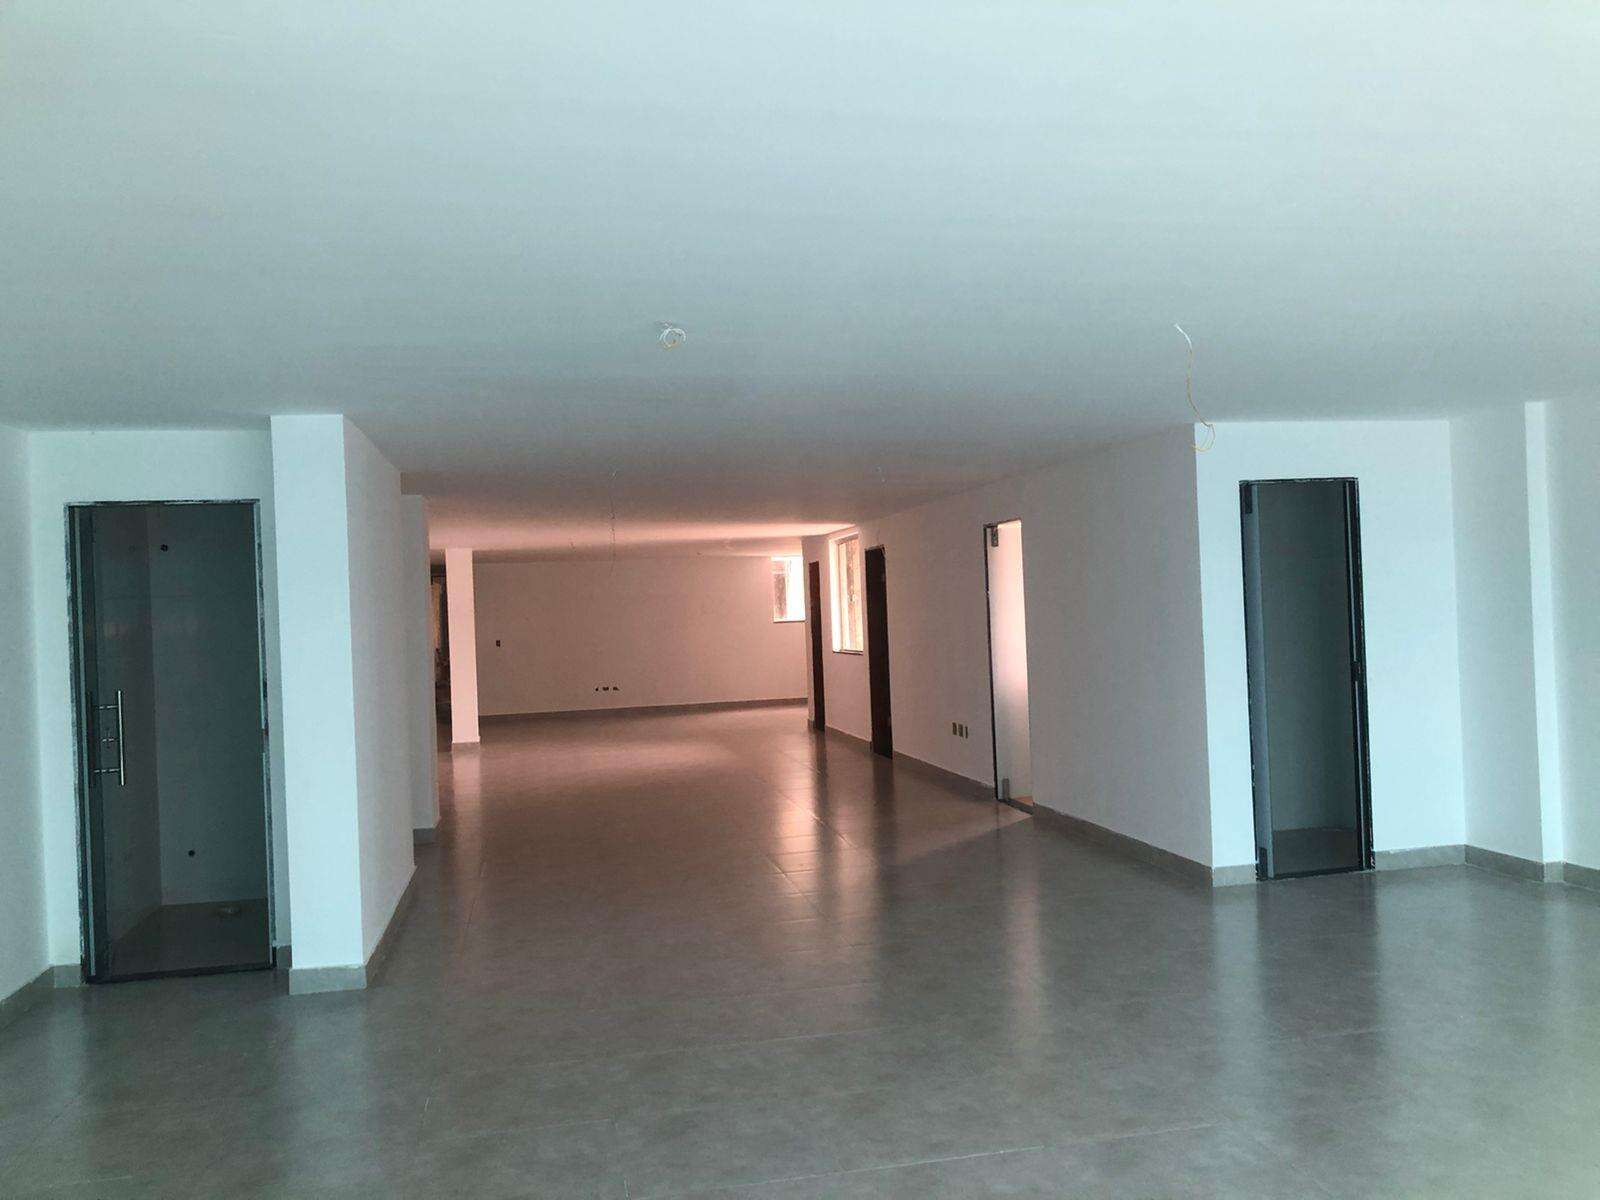 Sala para aluguel no Centro: ca2080e1-1-whatsapp-image-2021-09-29-at-15.52.06.jpeg